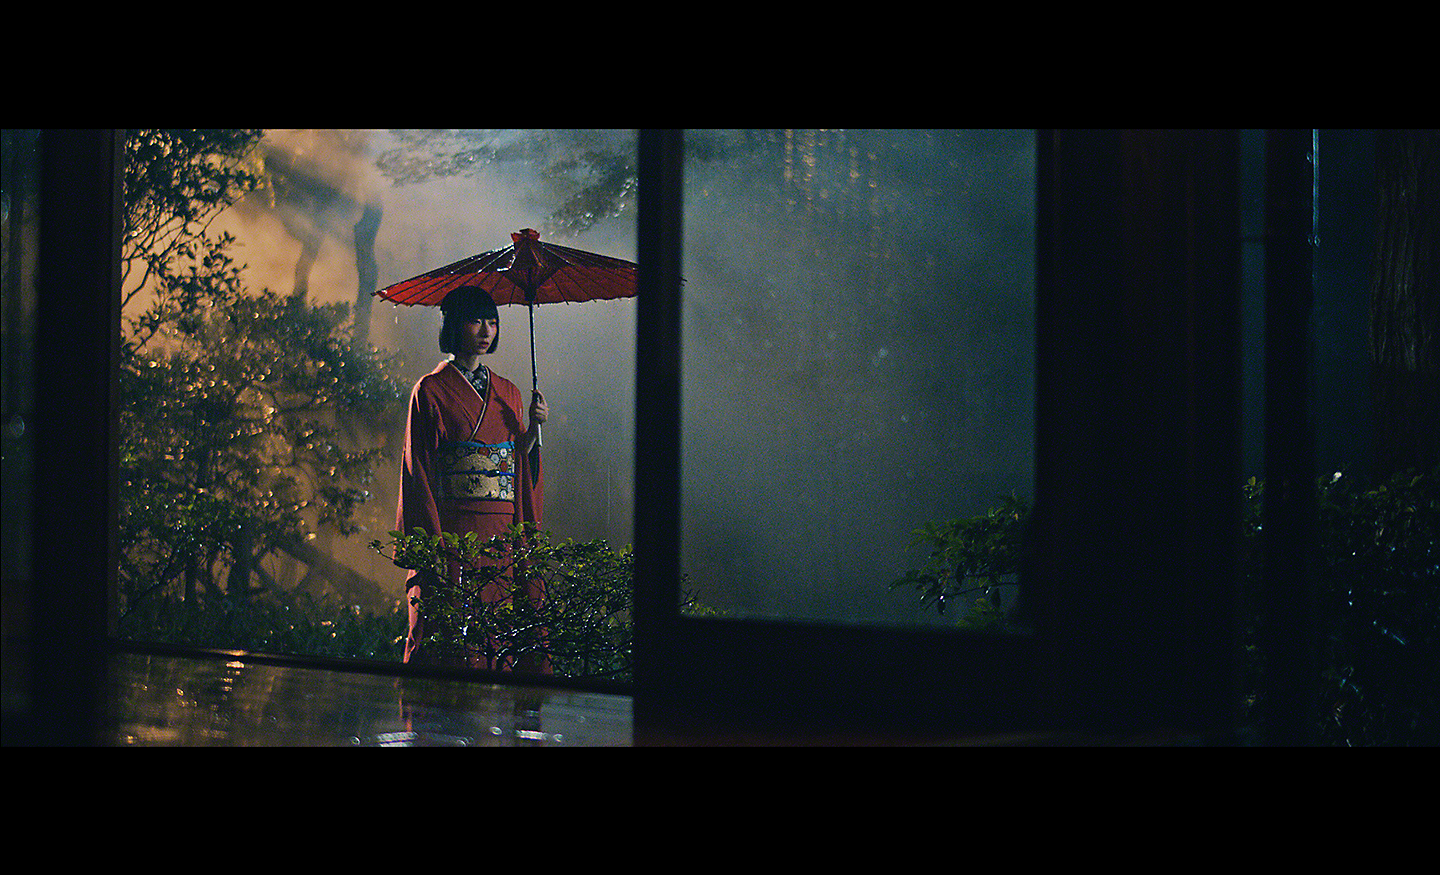 Hình ảnh trong ánh sáng yếu chụp người phụ nữ cầm chiếc ô che nắng màu đỏ